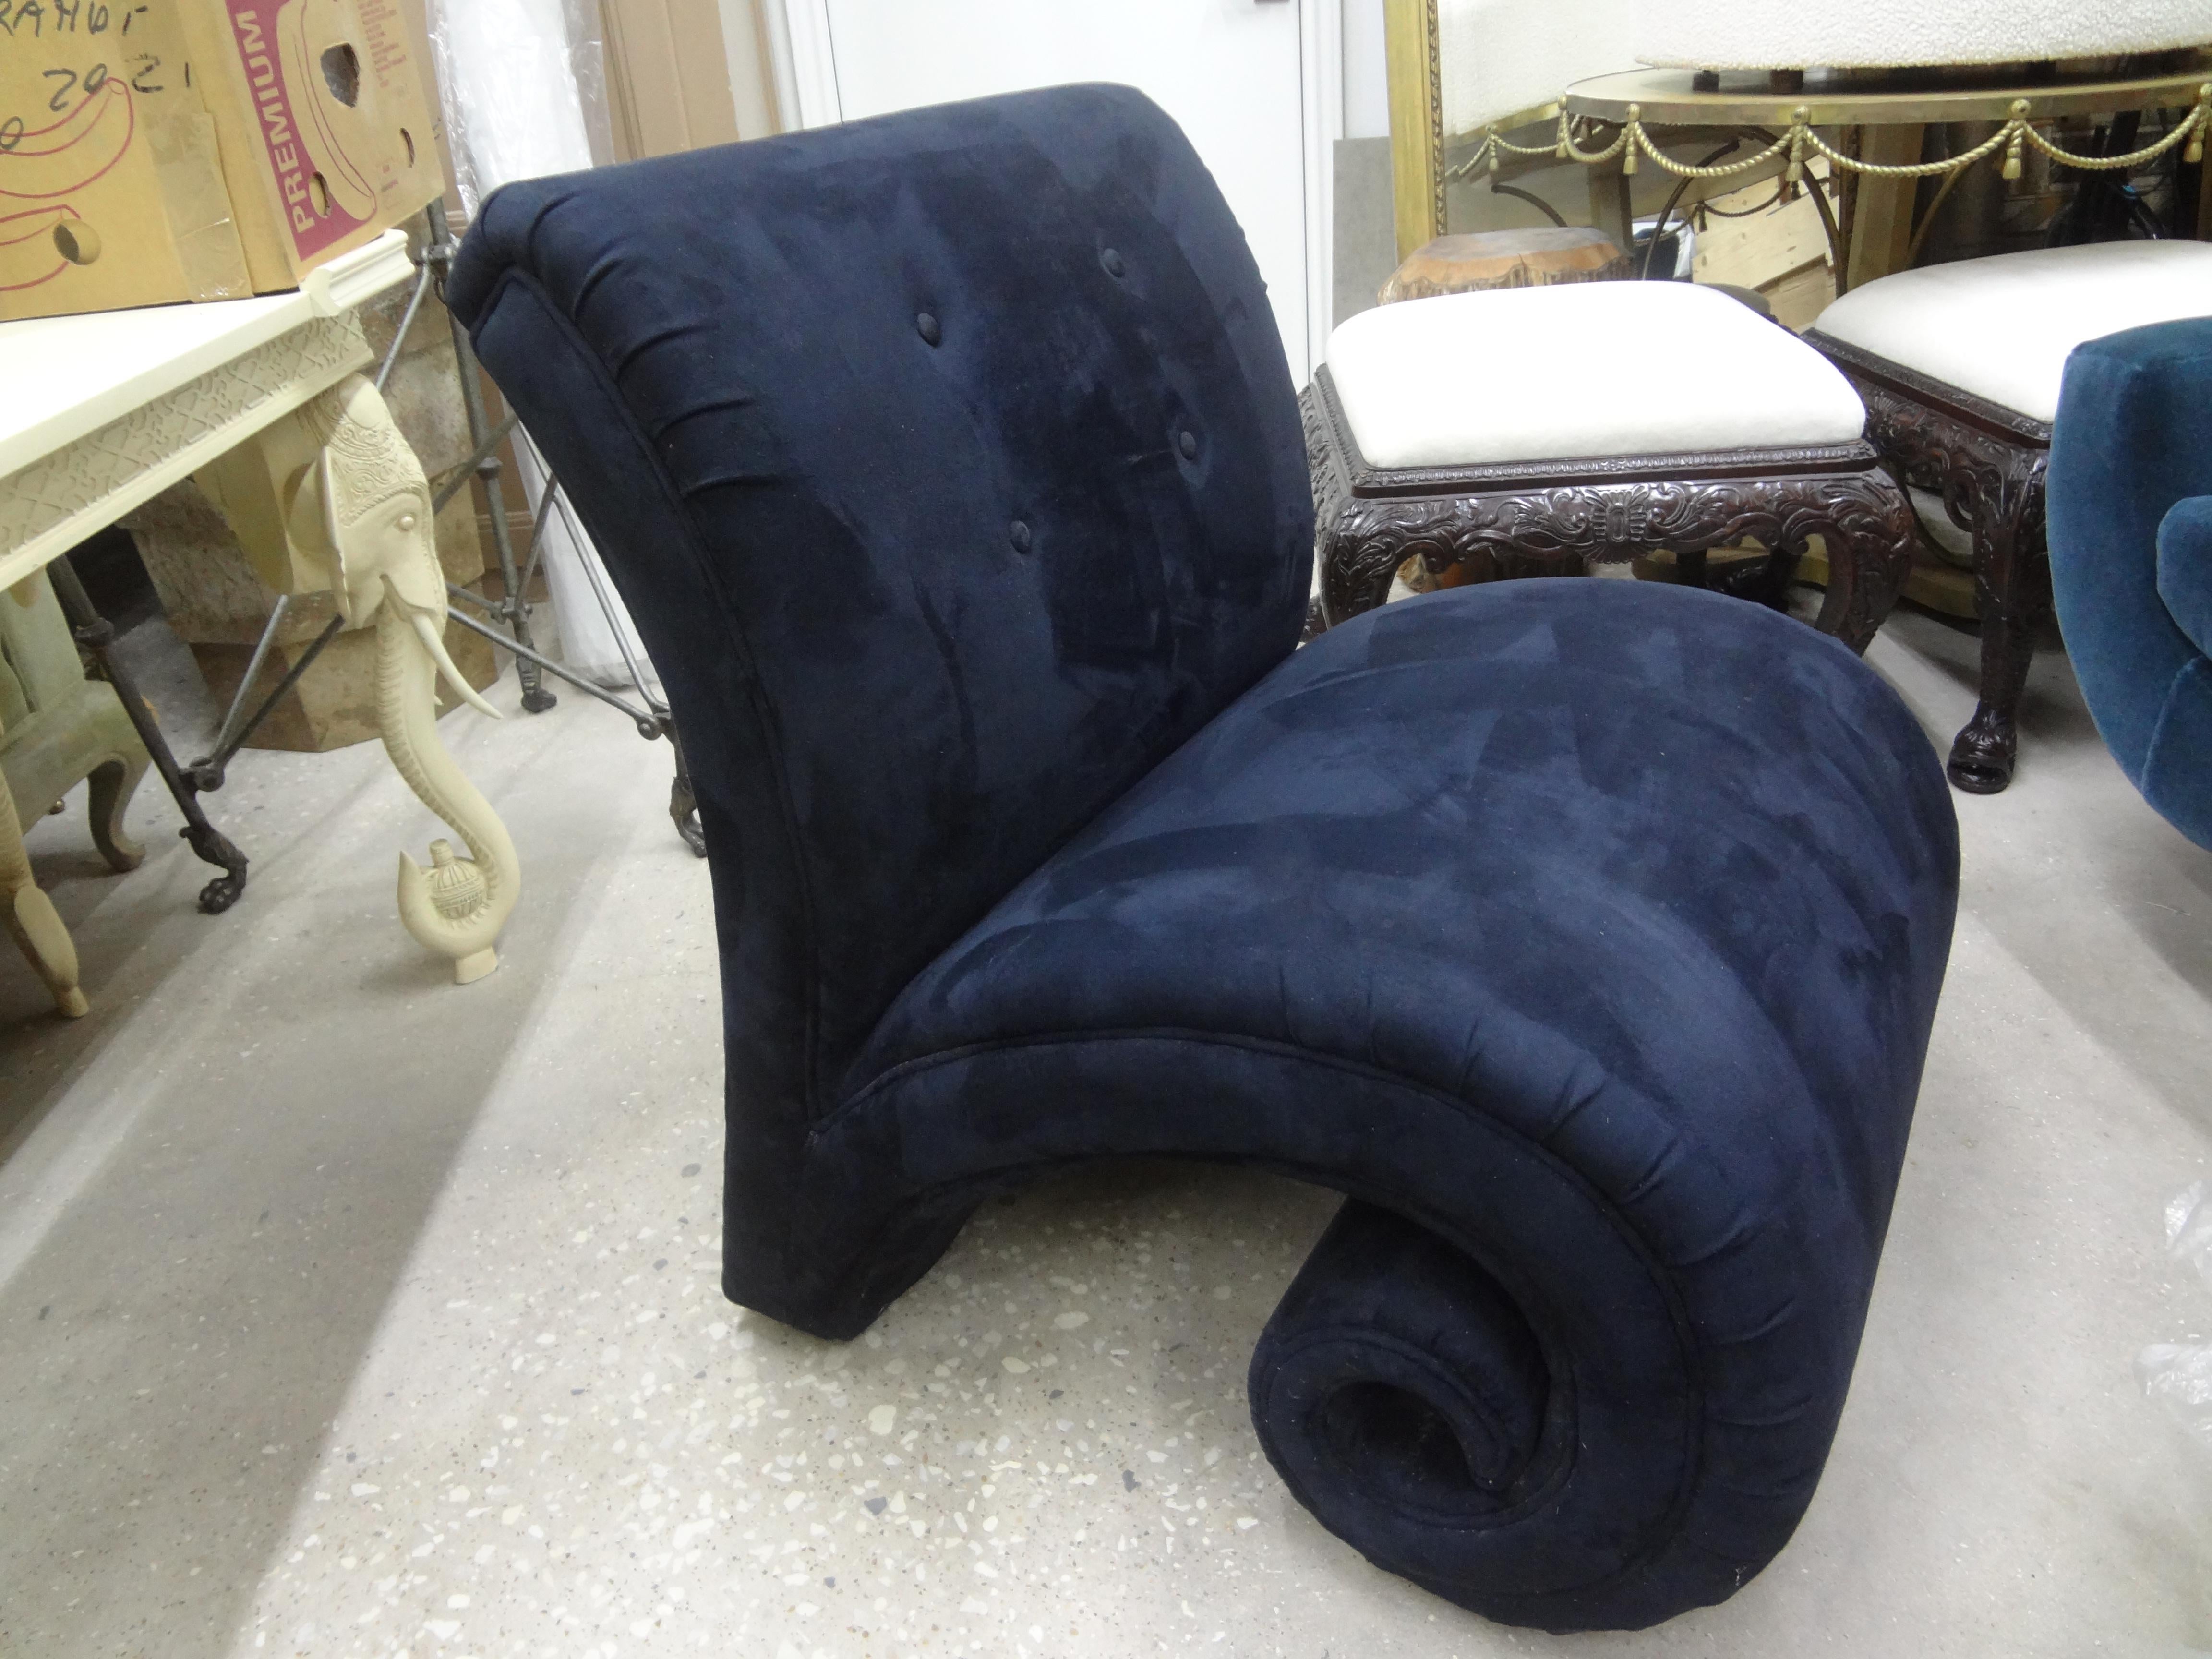 Postmoderner skulpturaler Scroll Lounge Chair. Diese atemberaubende Modernist Lounge Chair, die in einem interessanten Scroll oder Curl Design endet, ist extrem bequem und schön aus jedem Blickwinkel. Derzeit in seiner ursprünglichen Marineblau